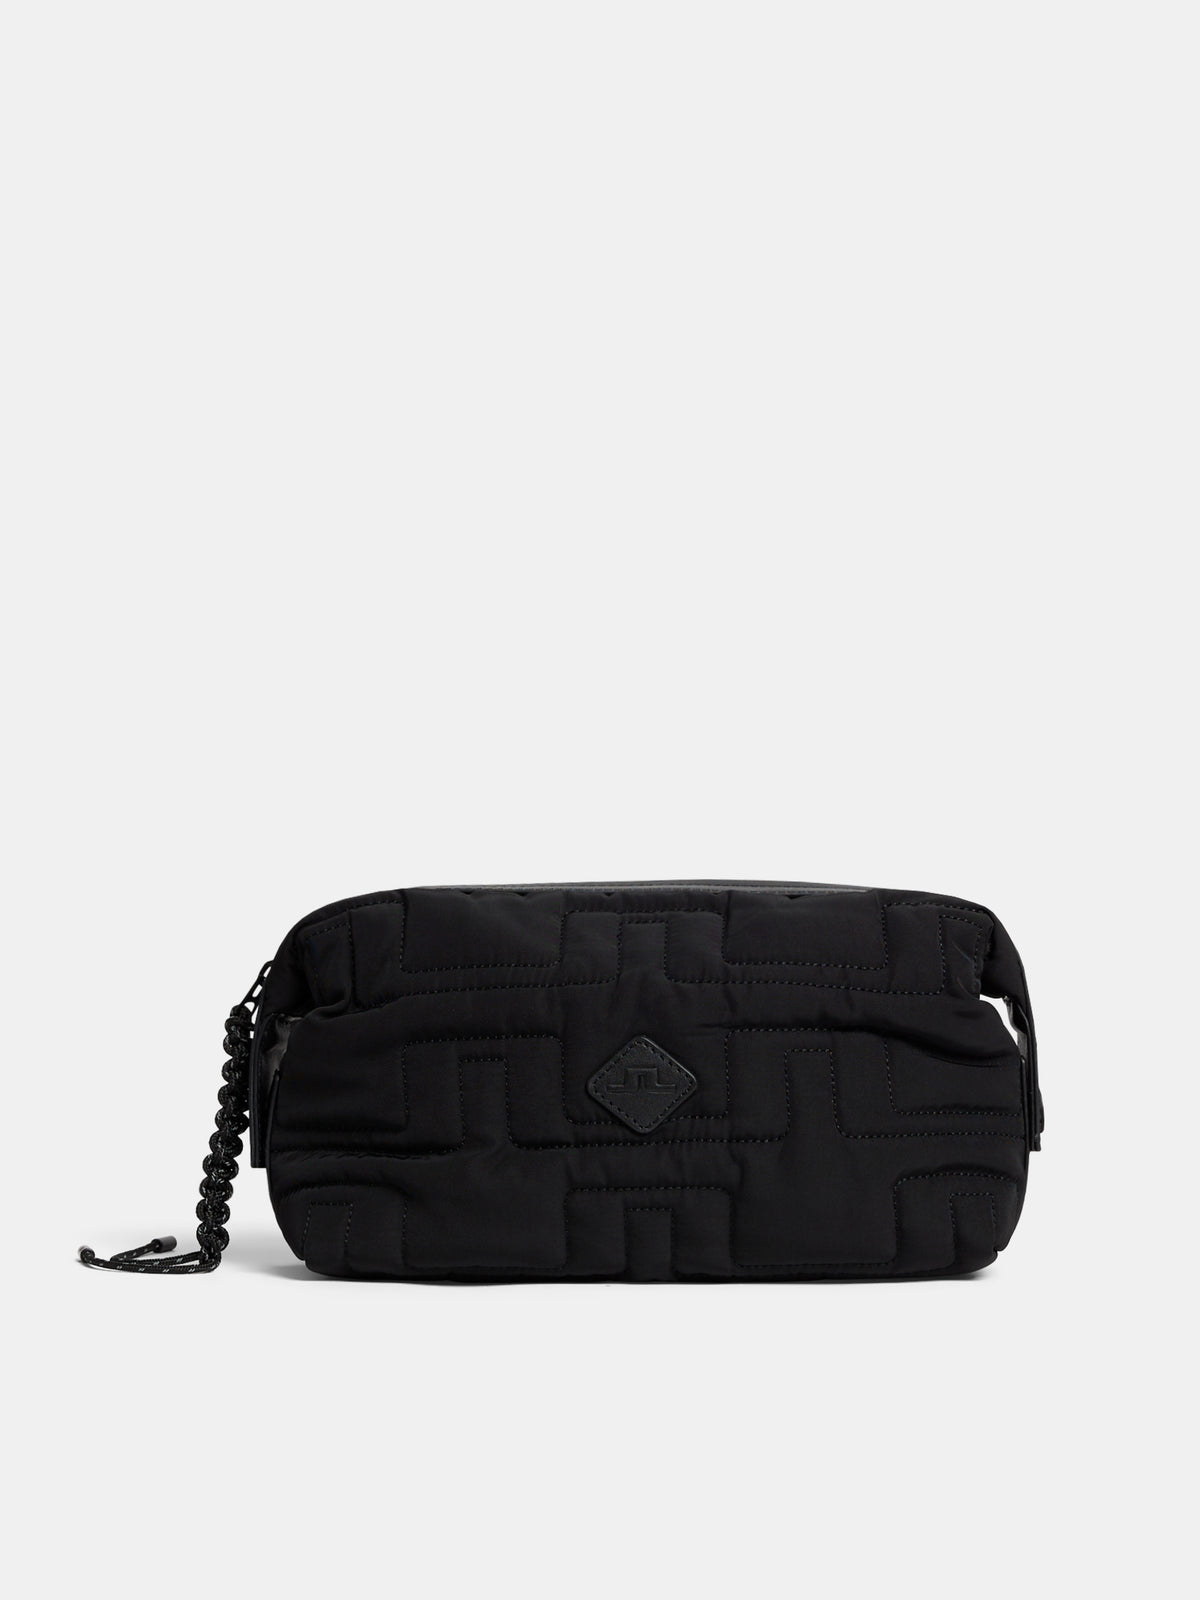 JL Wash bag / Black